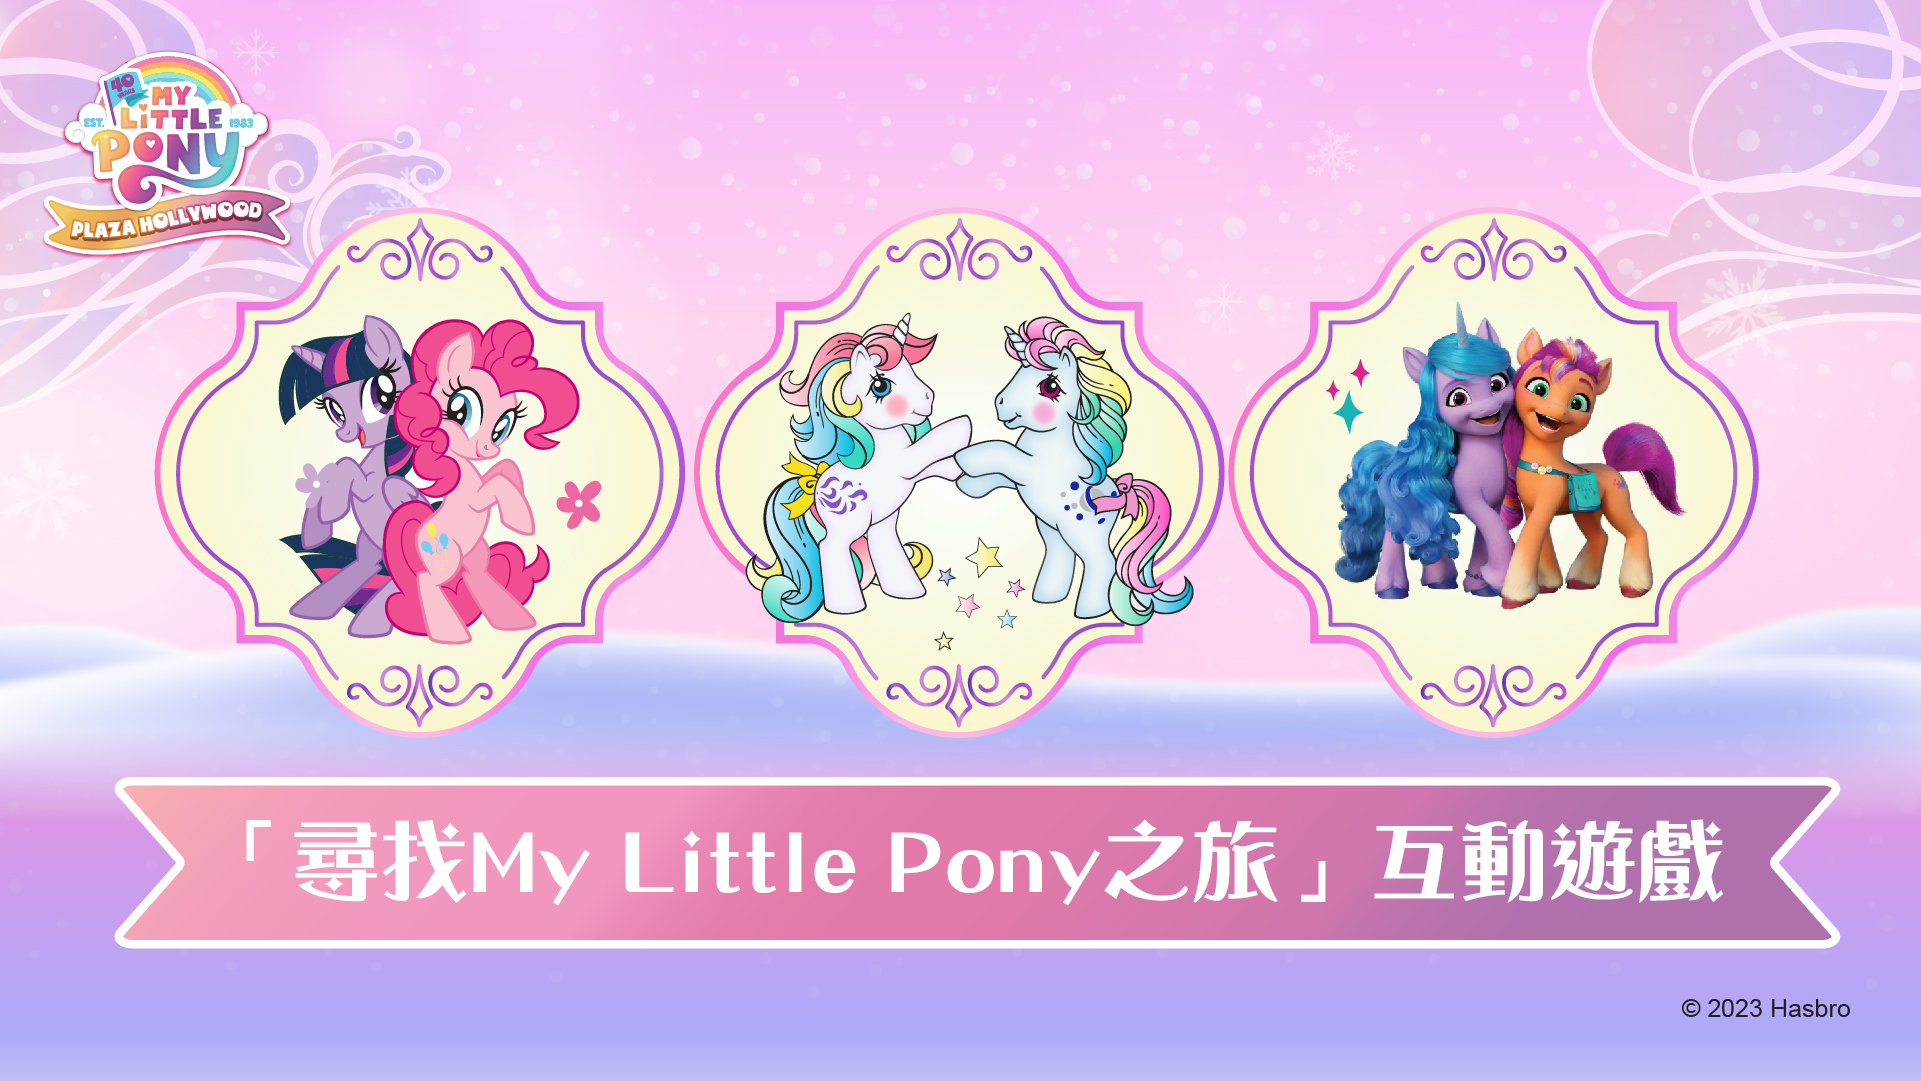 「寻找My Little Pony之旅」互动游戏